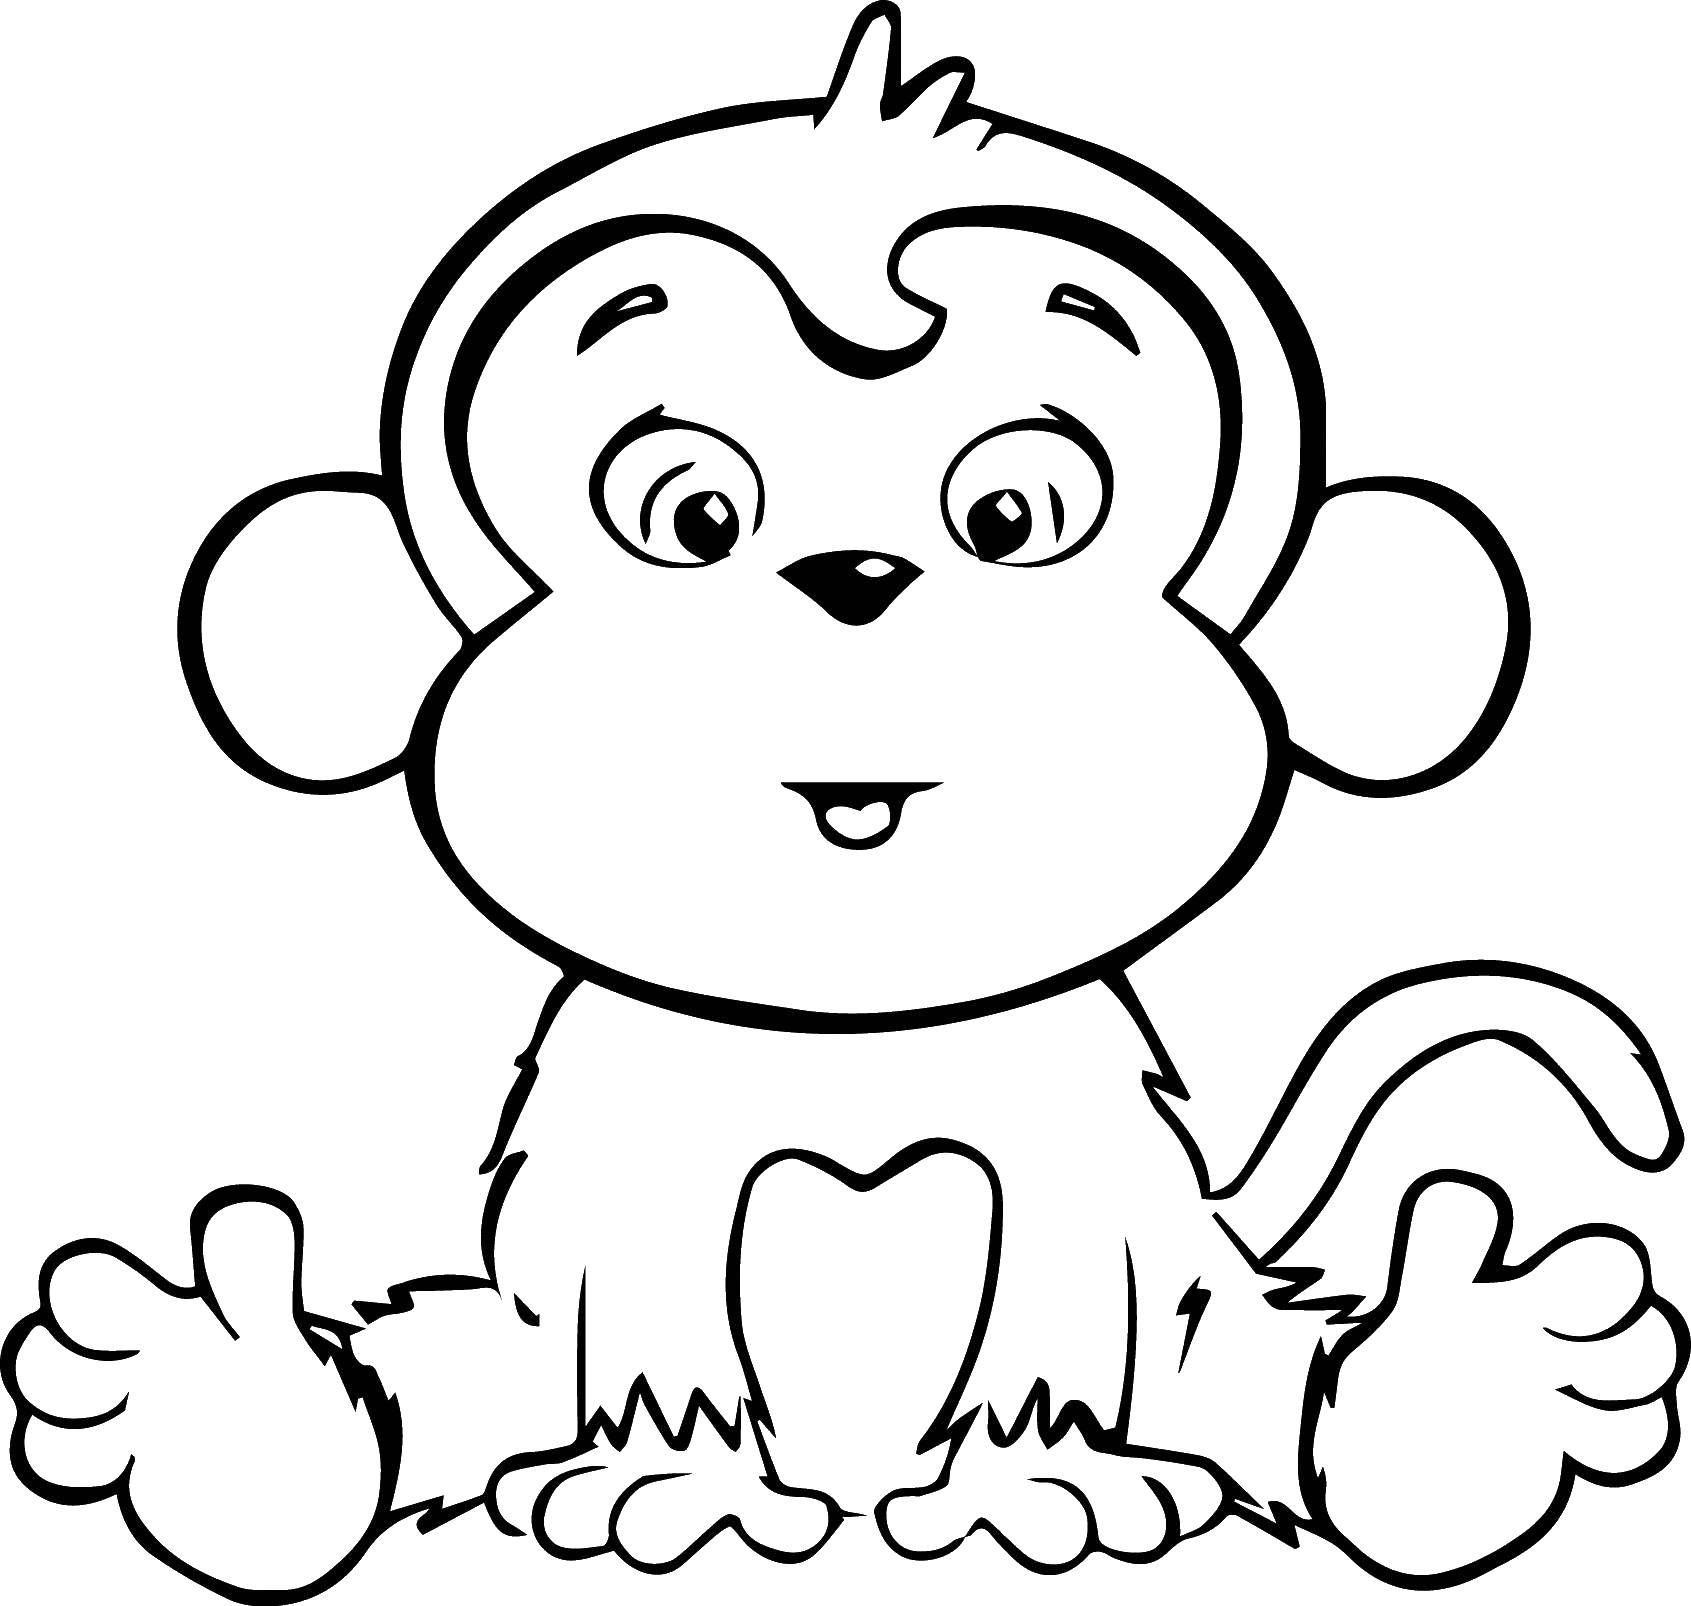 Coloring Monkey. Category APE. Tags:  animals, monkey, monkey, monkey.